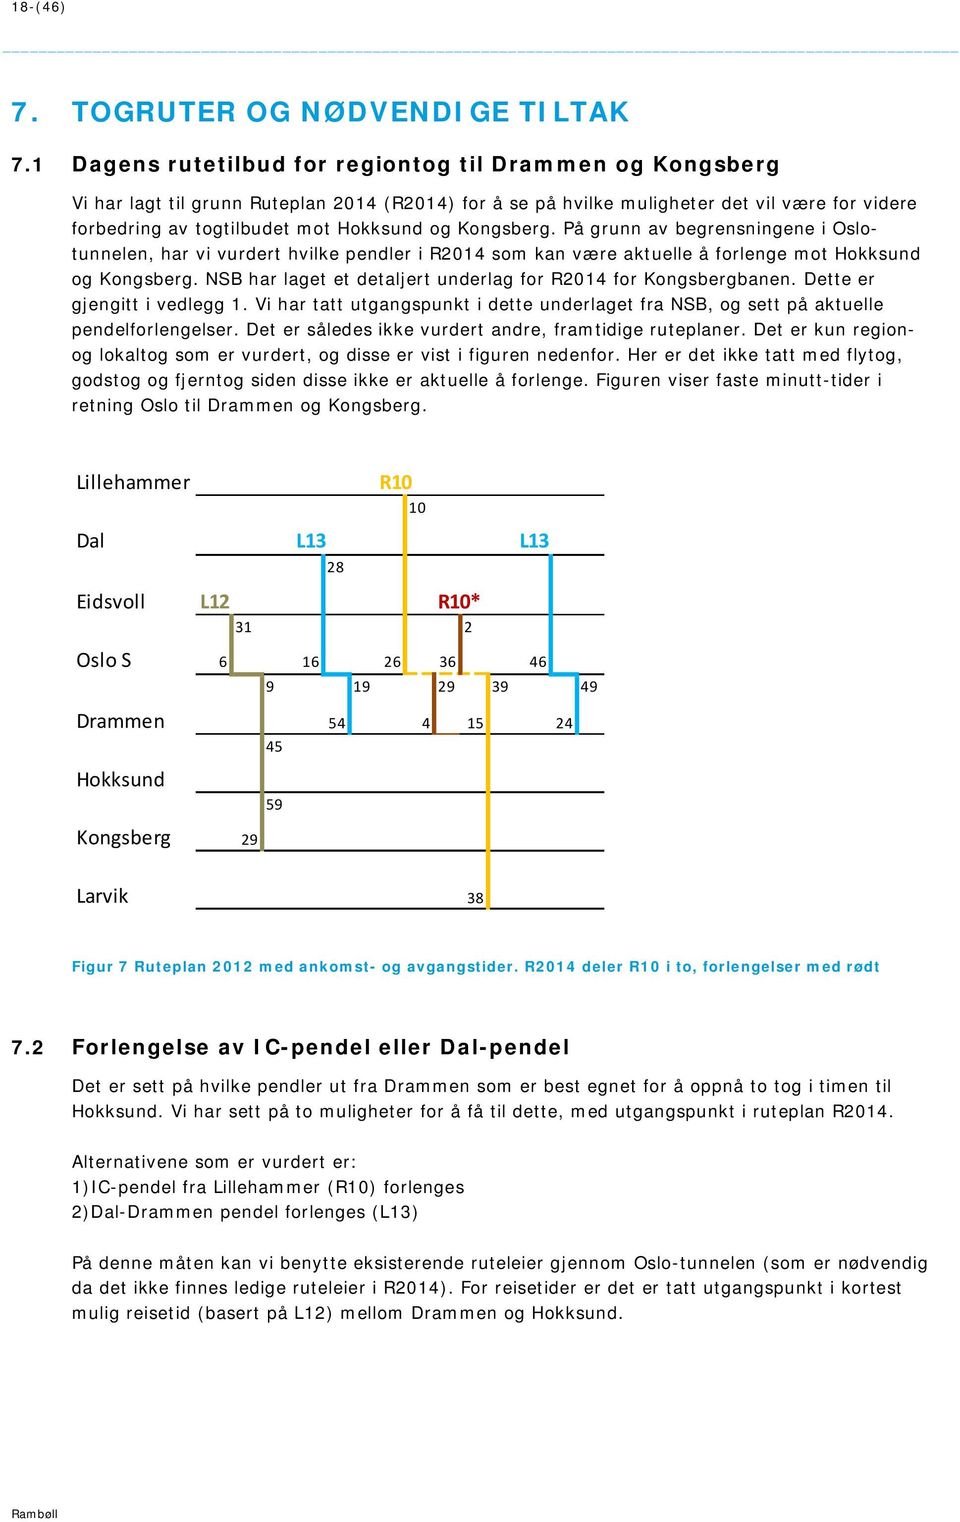 Kongsberg. På grunn av begrensningene i Oslotunnelen, har vi vurdert hvilke pendler i R2014 som kan være aktuelle å forlenge mot Hokksund og Kongsberg.